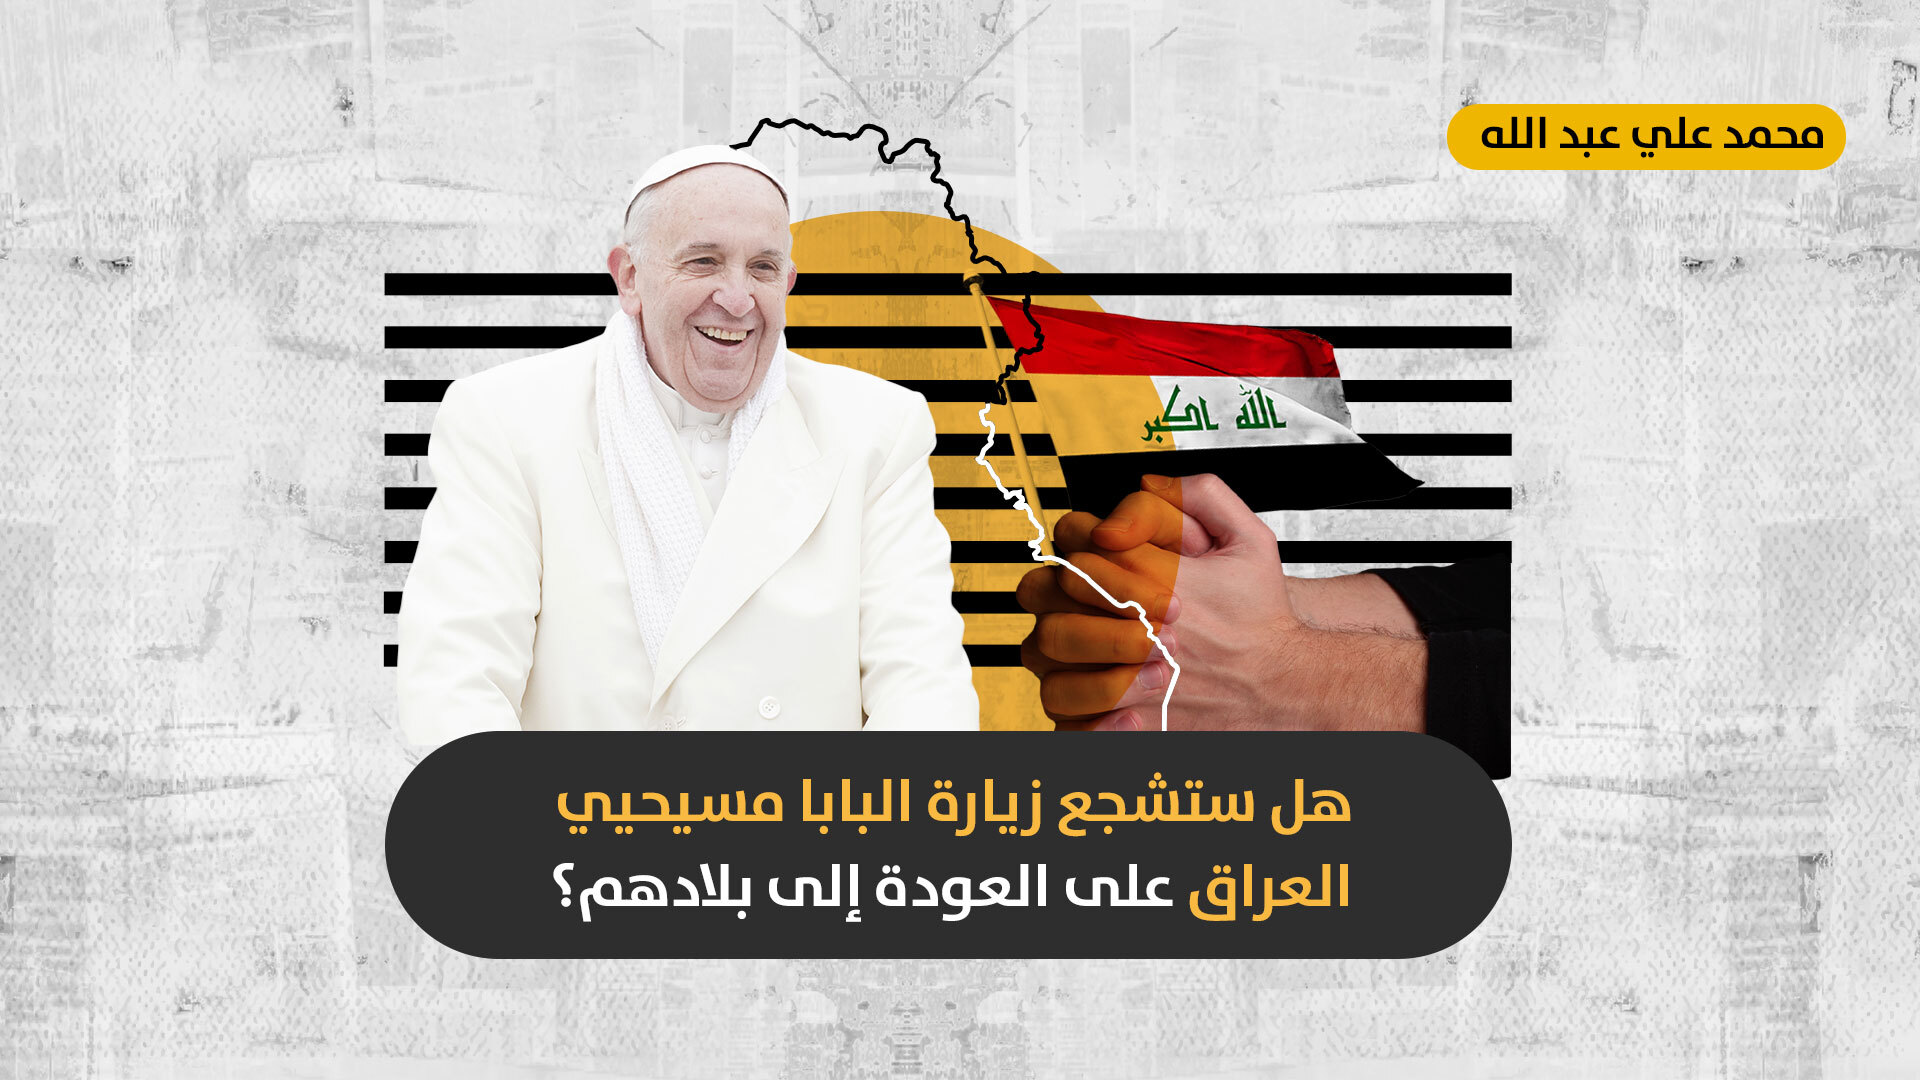 عقب انتهاء زيارة الحبر الأعظم: هل سيلبي المسيحيون العراقيون دعوة البابا للعودة إلى البلاد؟